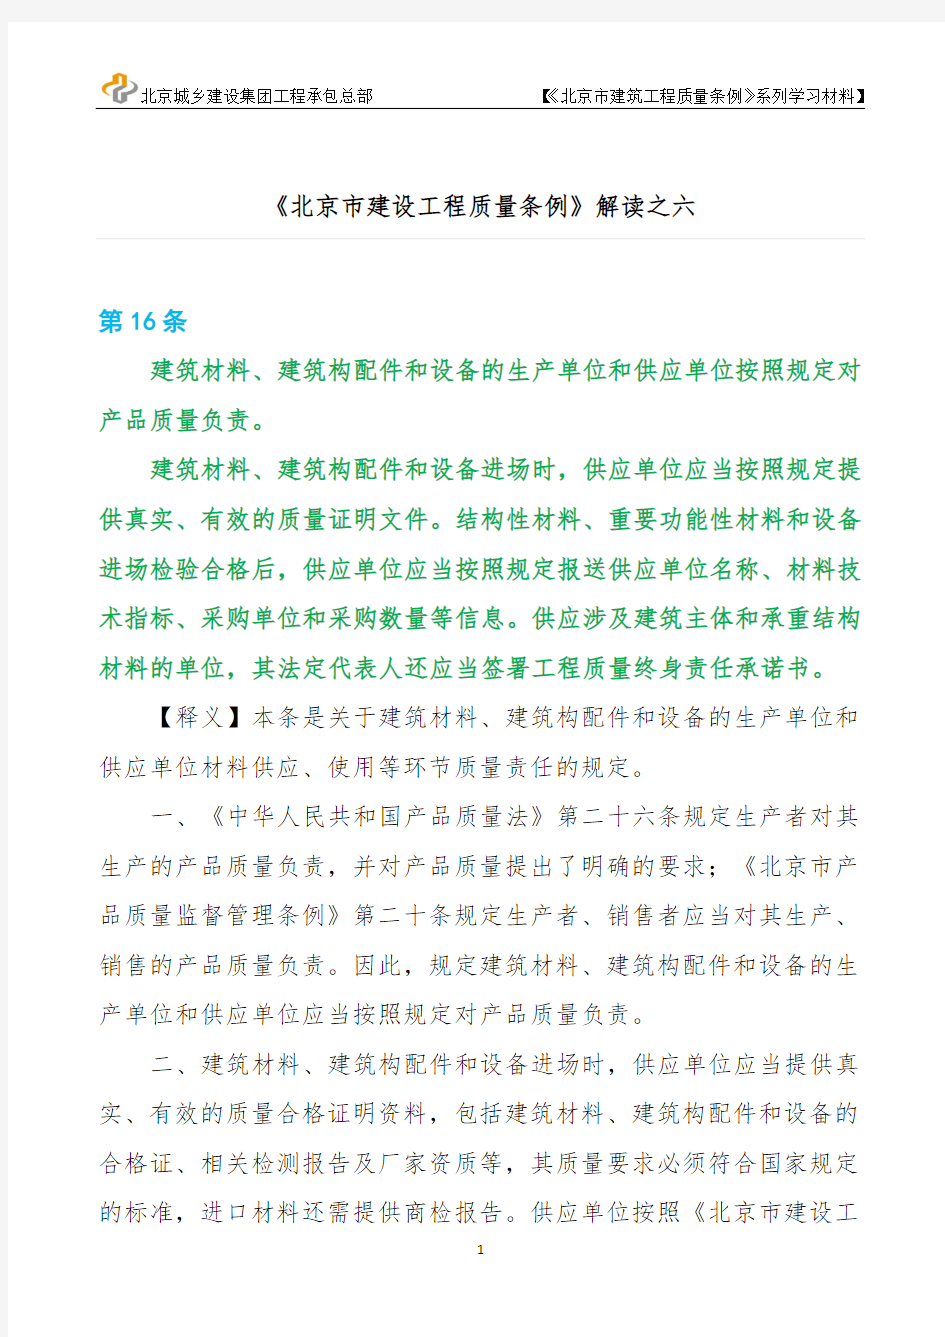 《北京建筑工程质量条例》宣贯系列材料之三·6